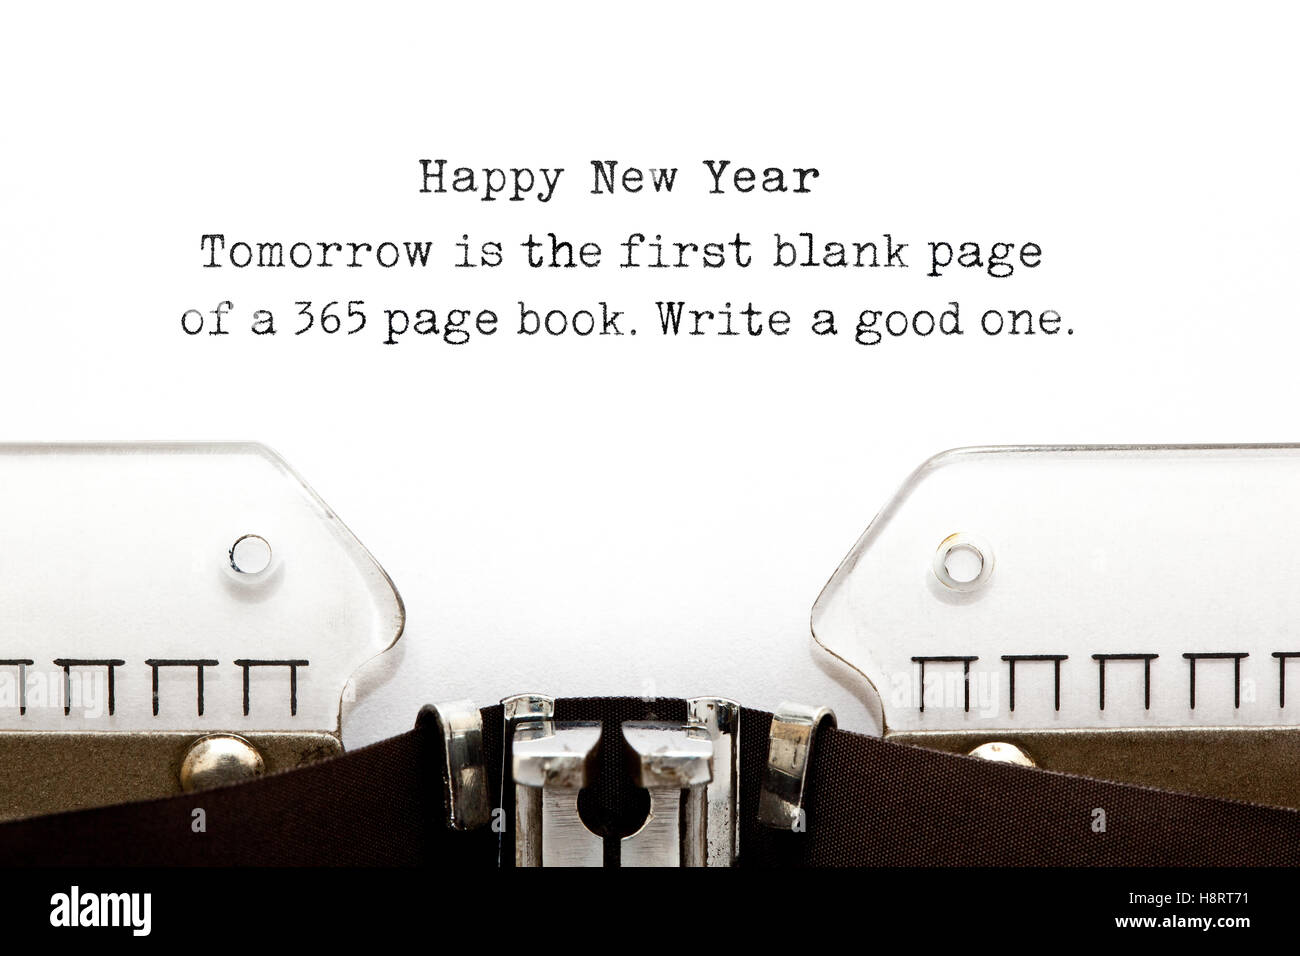 Morgen ist die erste leere Seite ein 365 Seiten starkes Buch. Schreiben Sie eine gute. Neue Jahr gedruckt Zitat auf einer alten Schreibmaschine. Stockfoto